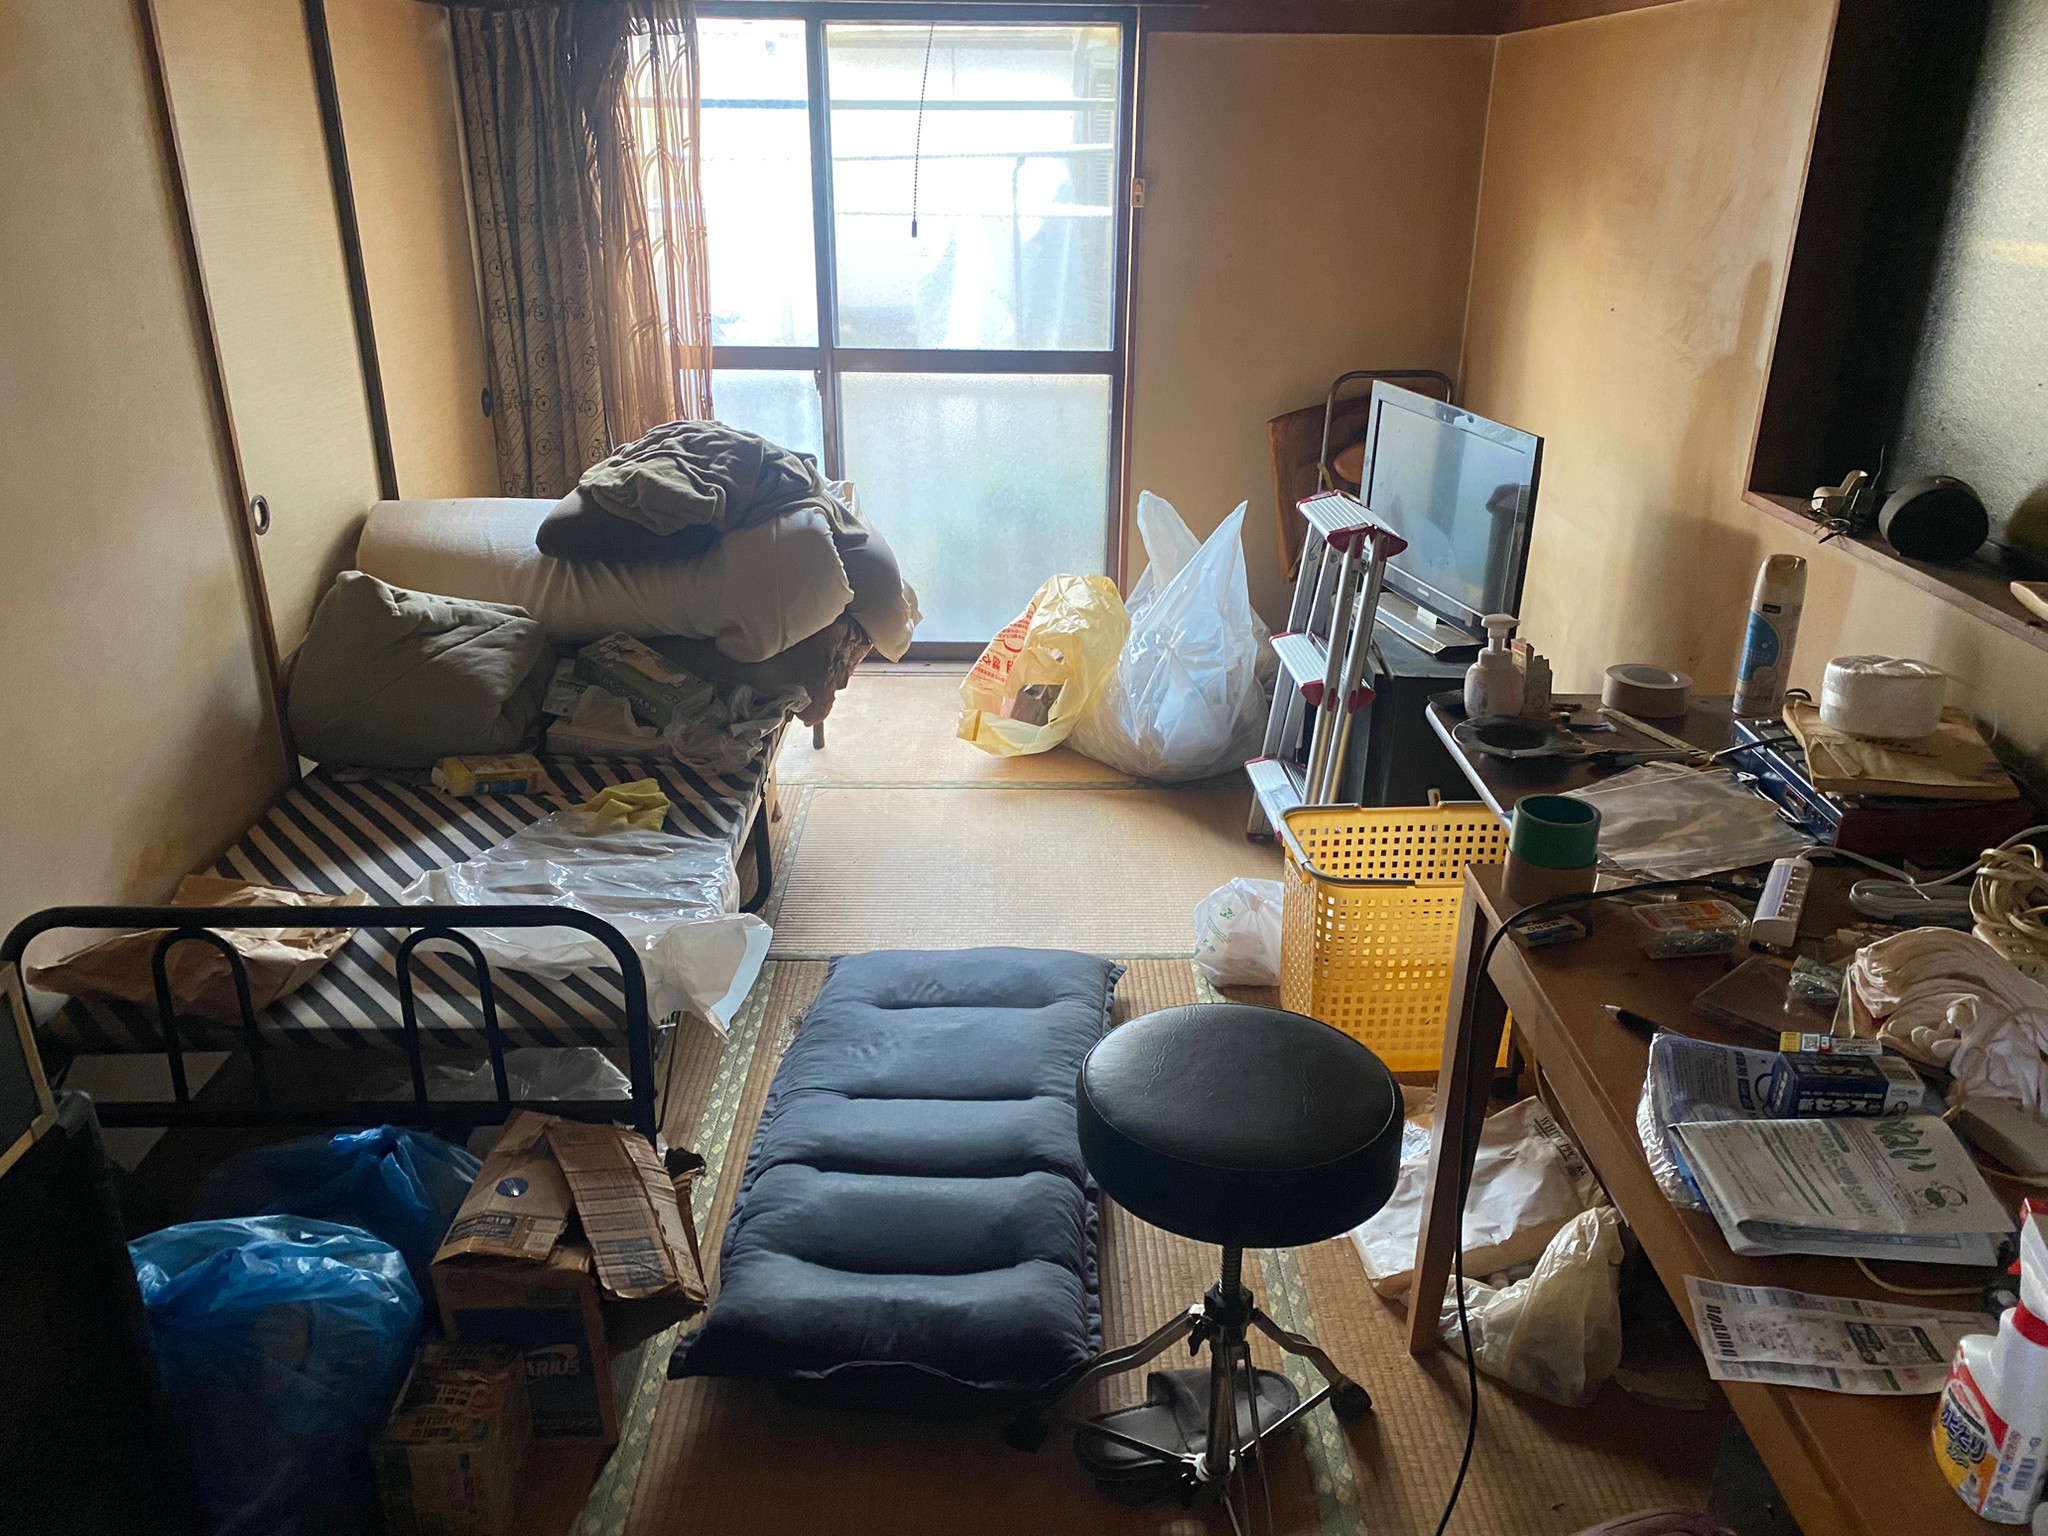 ベッド、布団一式、テレビ、テレビ台、テーブル、椅子、生活用品の回収前の状態